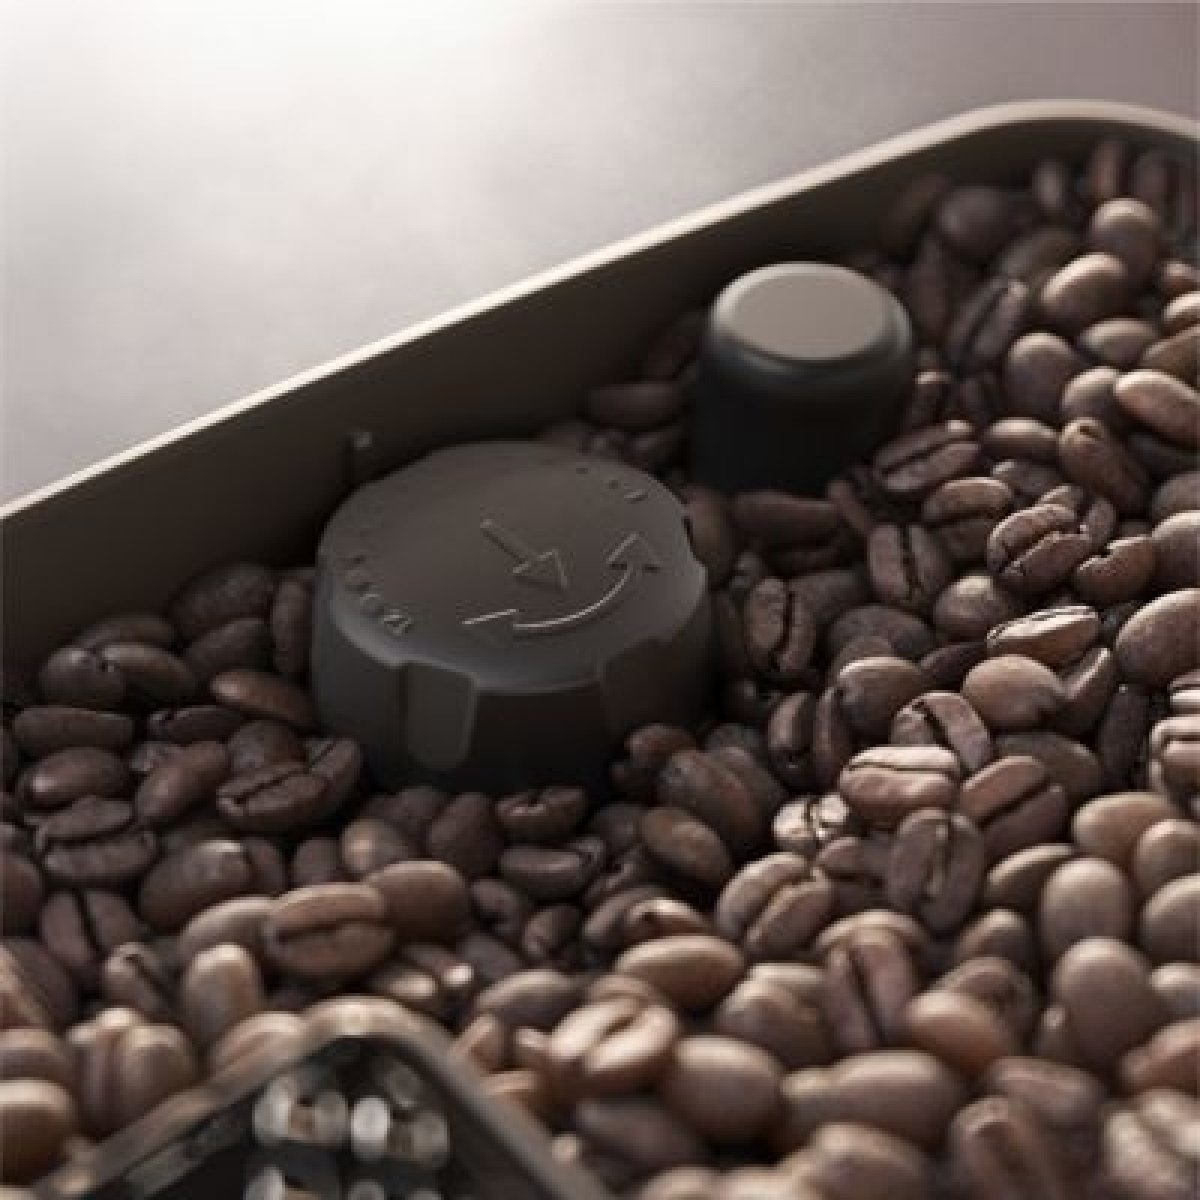 Systém Aroma Extract pro skutečně lahodnou a krásně voňavou kávu